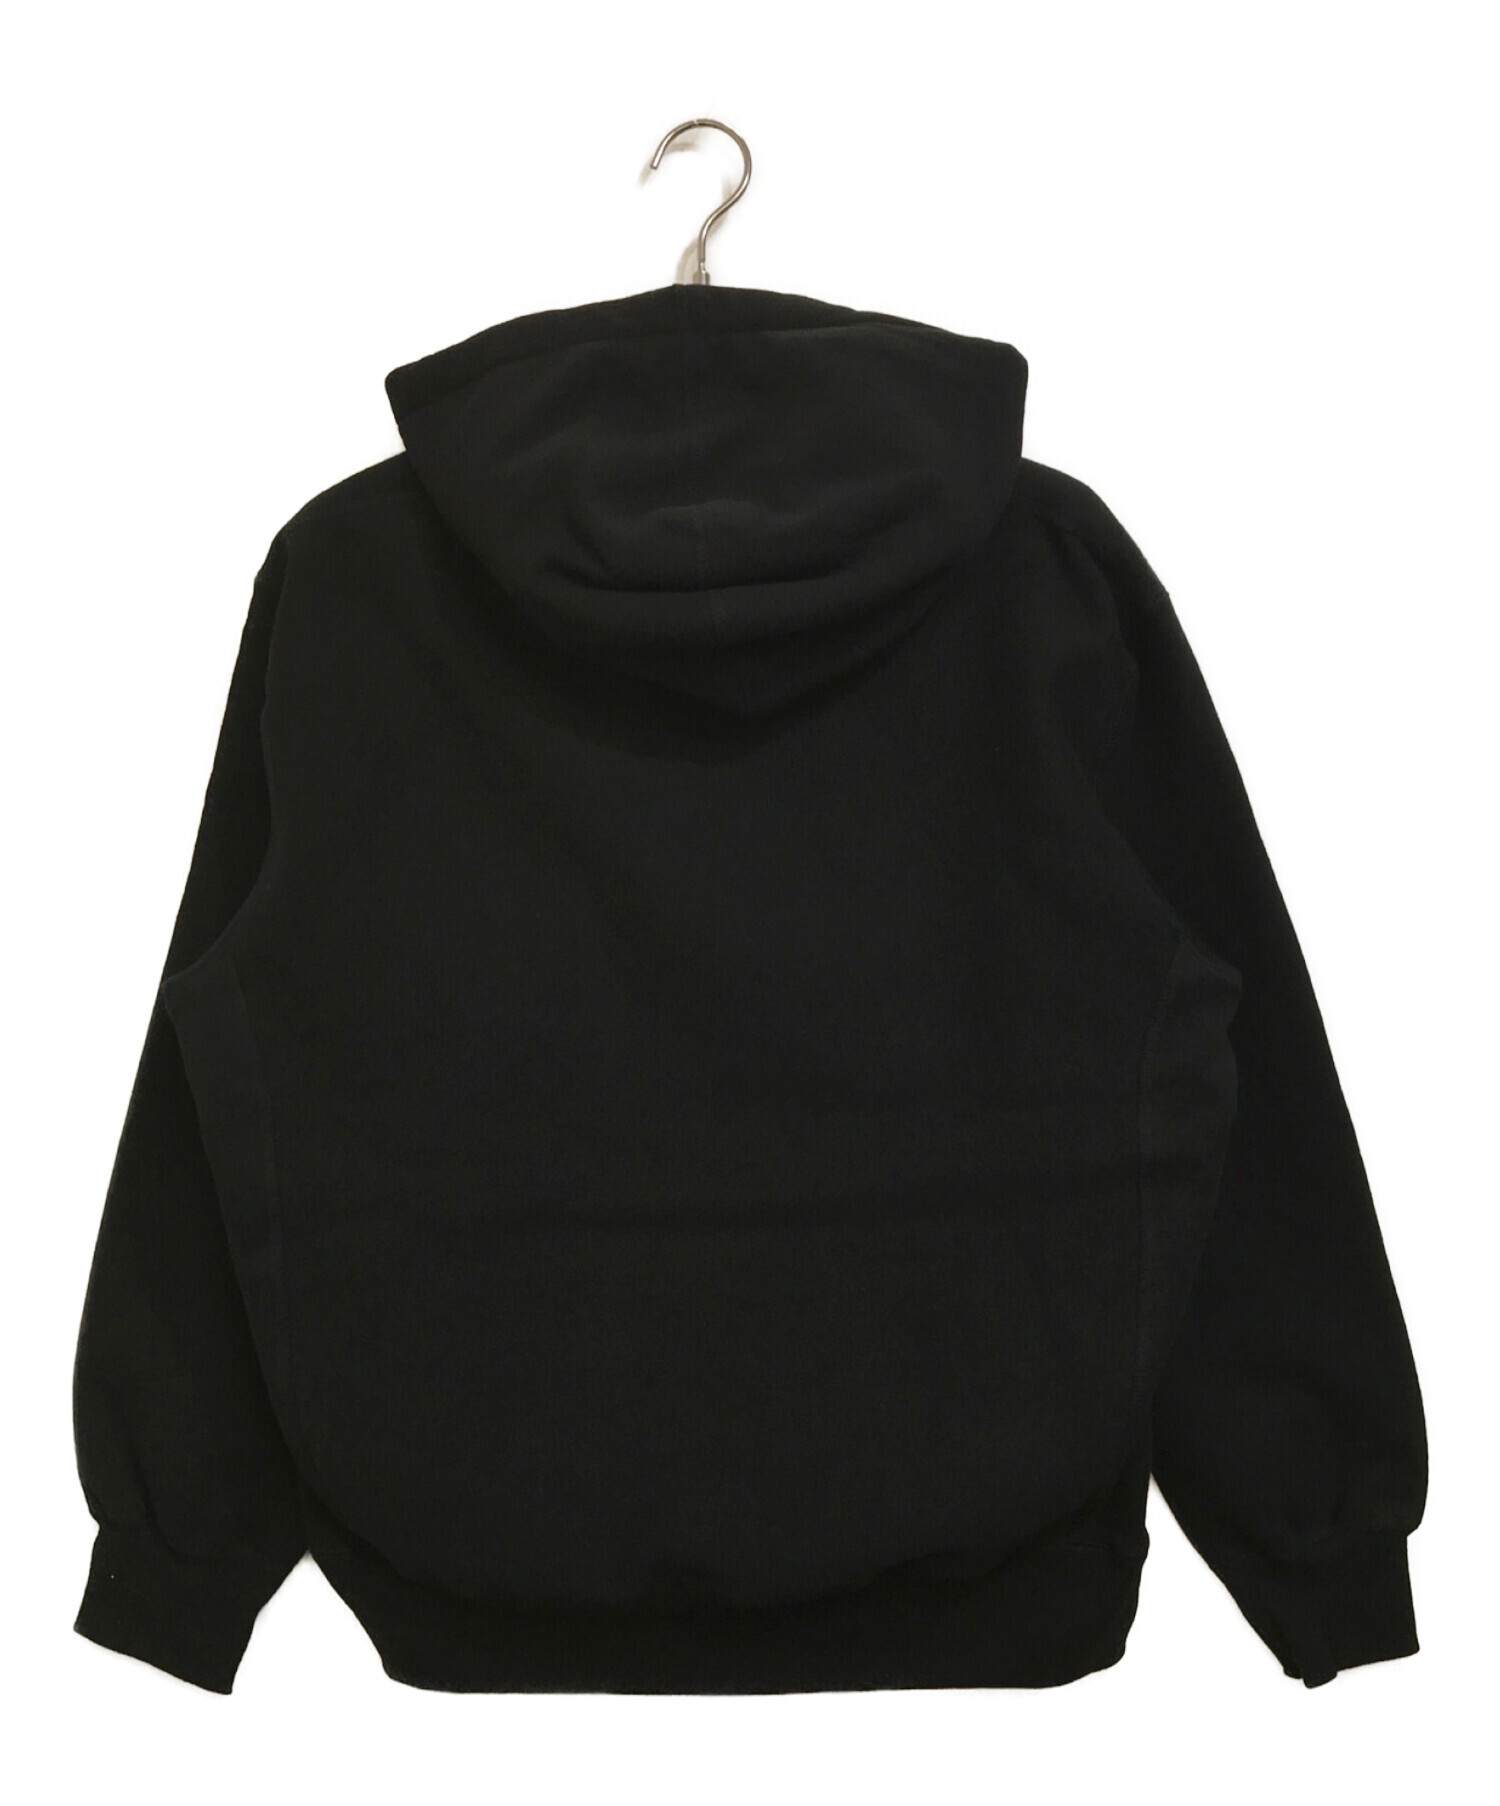 Supreme (シュプリーム) Capital Hooded Sweatshirt ブラック サイズ:M